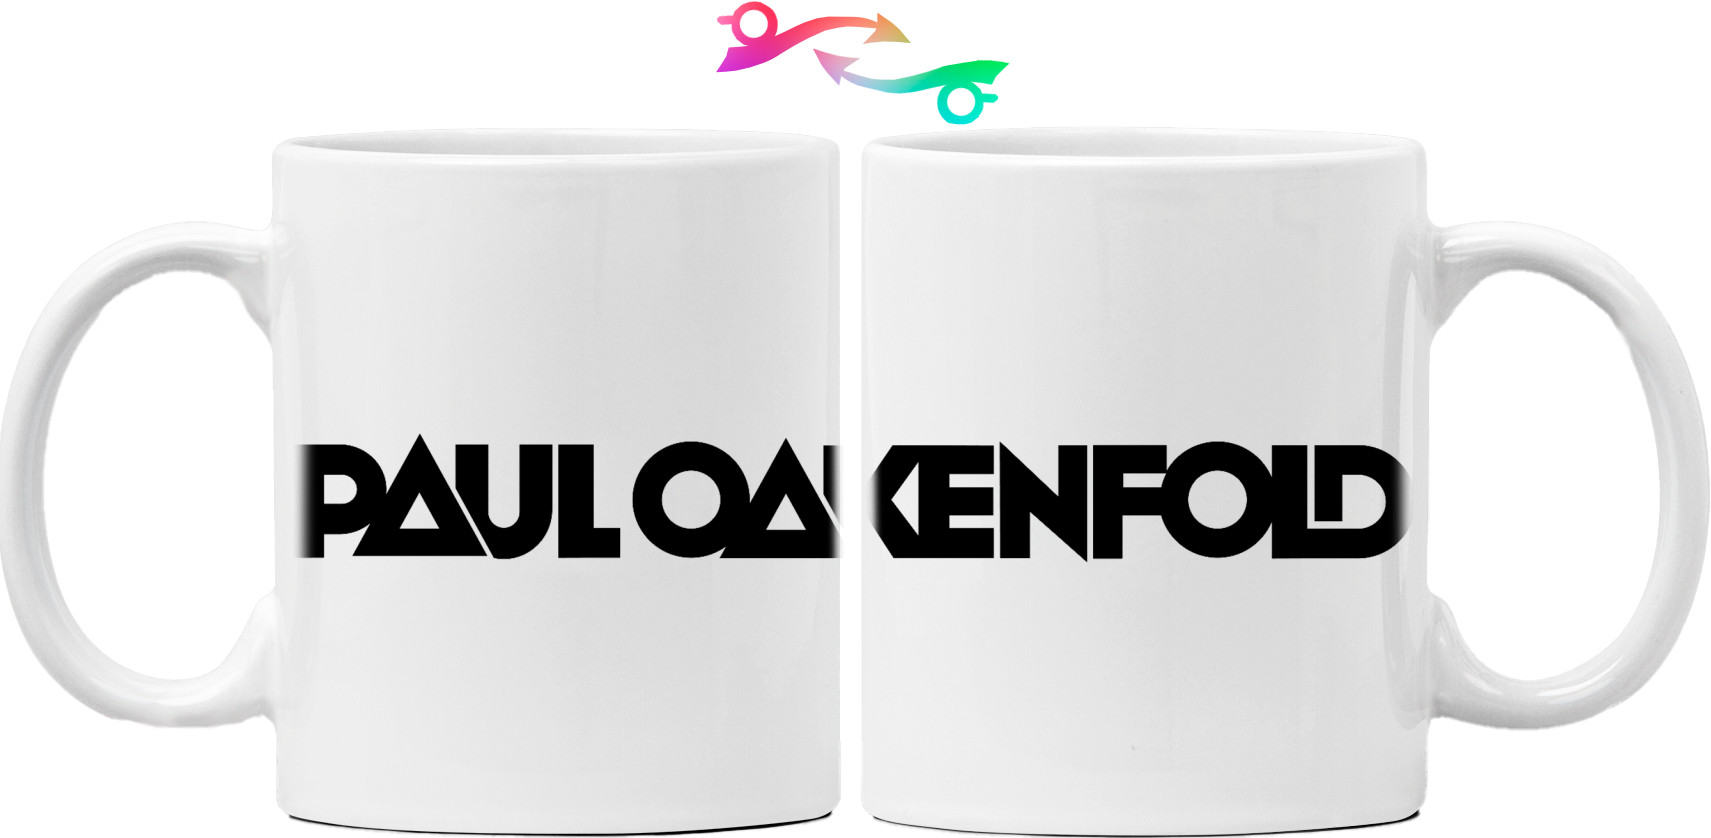 Paul Oakenfold - Mug - Paul Oakenfold - 3 - Mfest